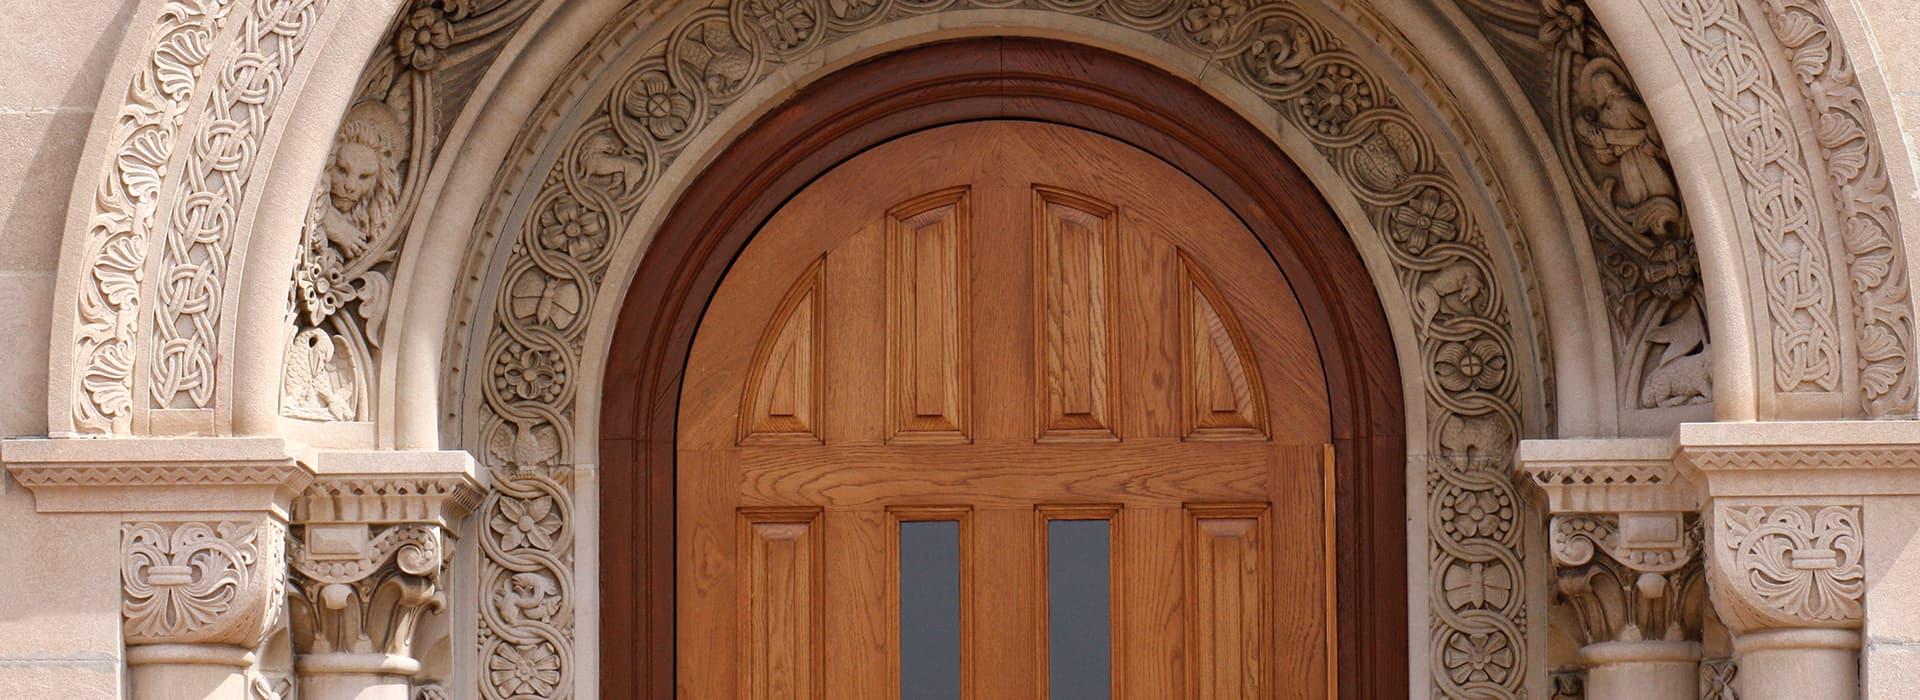 Wooden front door of campus building